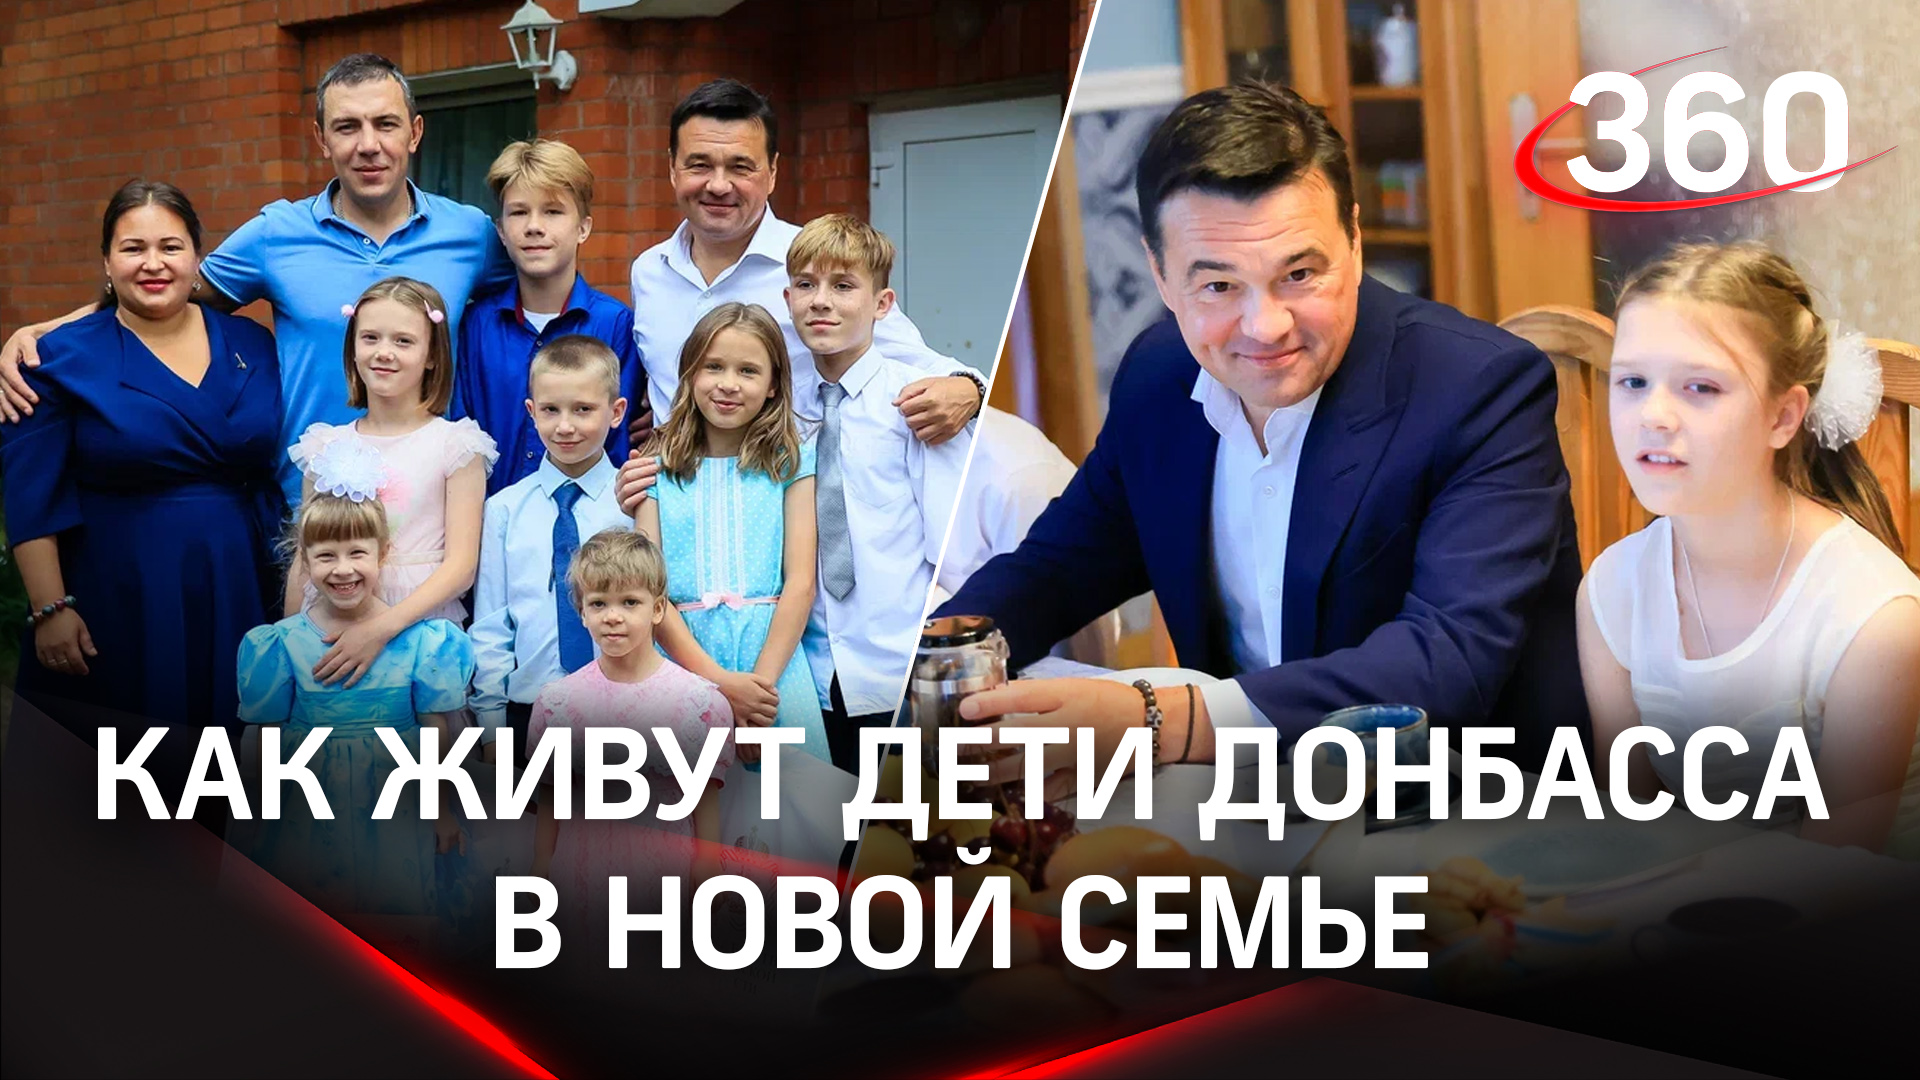 Как прошла первая неделя детей из Донбасса в новой семье